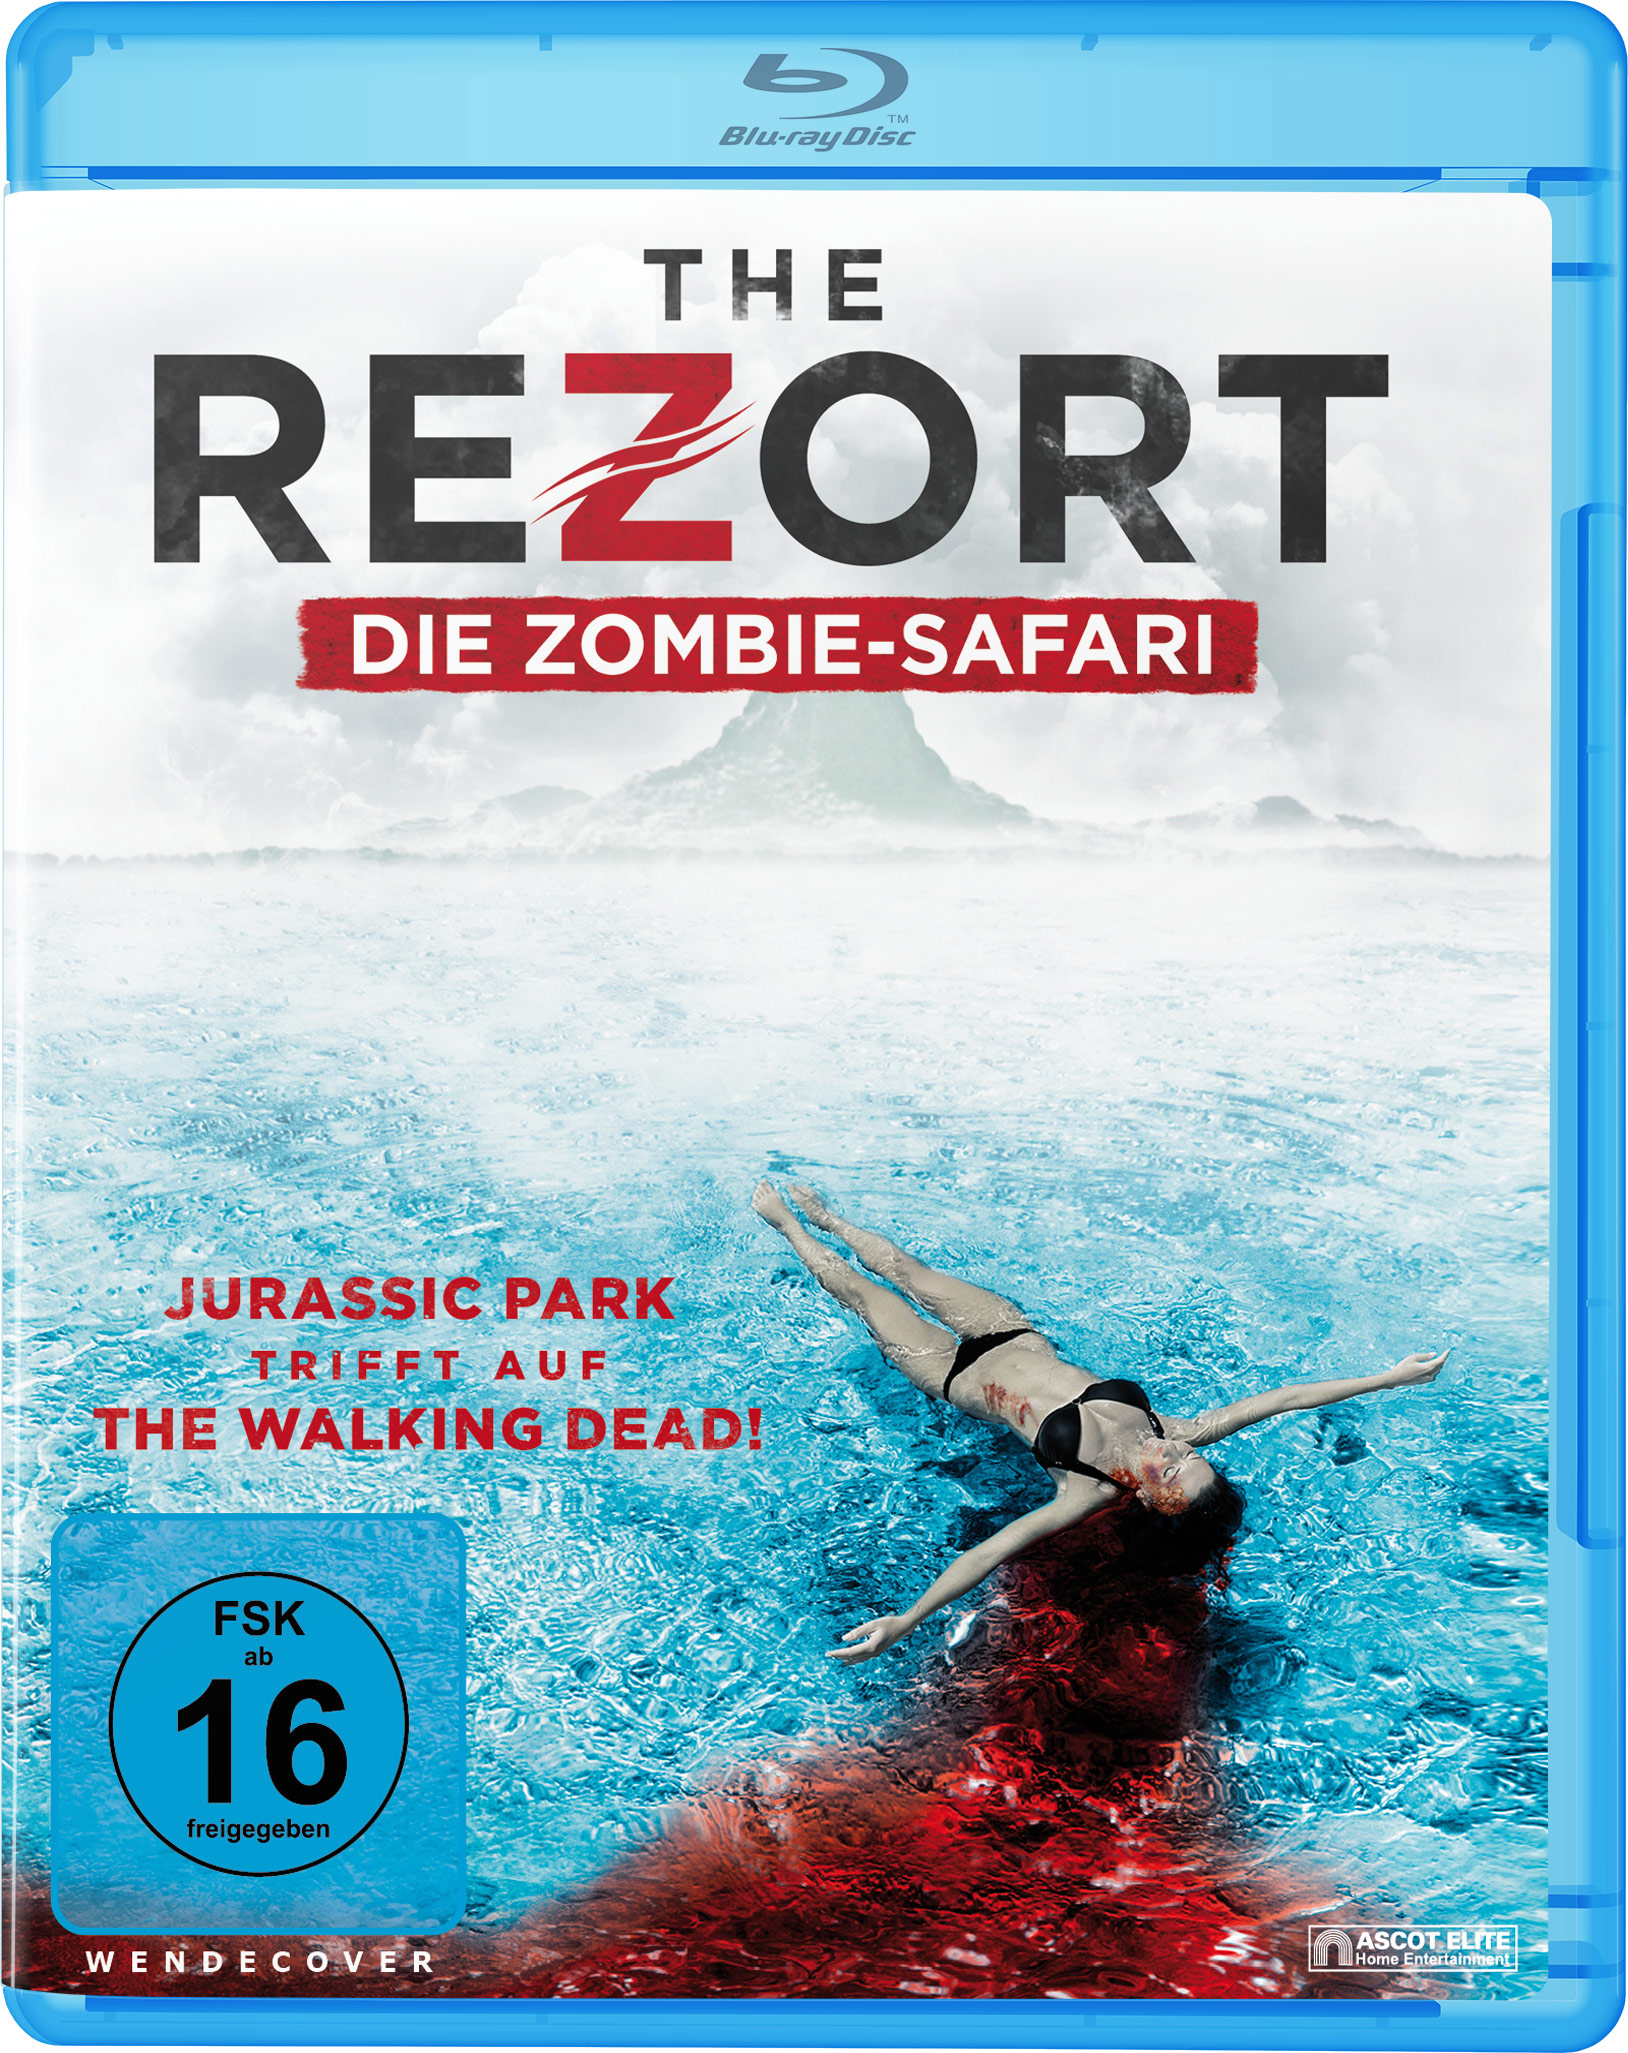 Zombie Rezort Safari Blu-ray - The Die